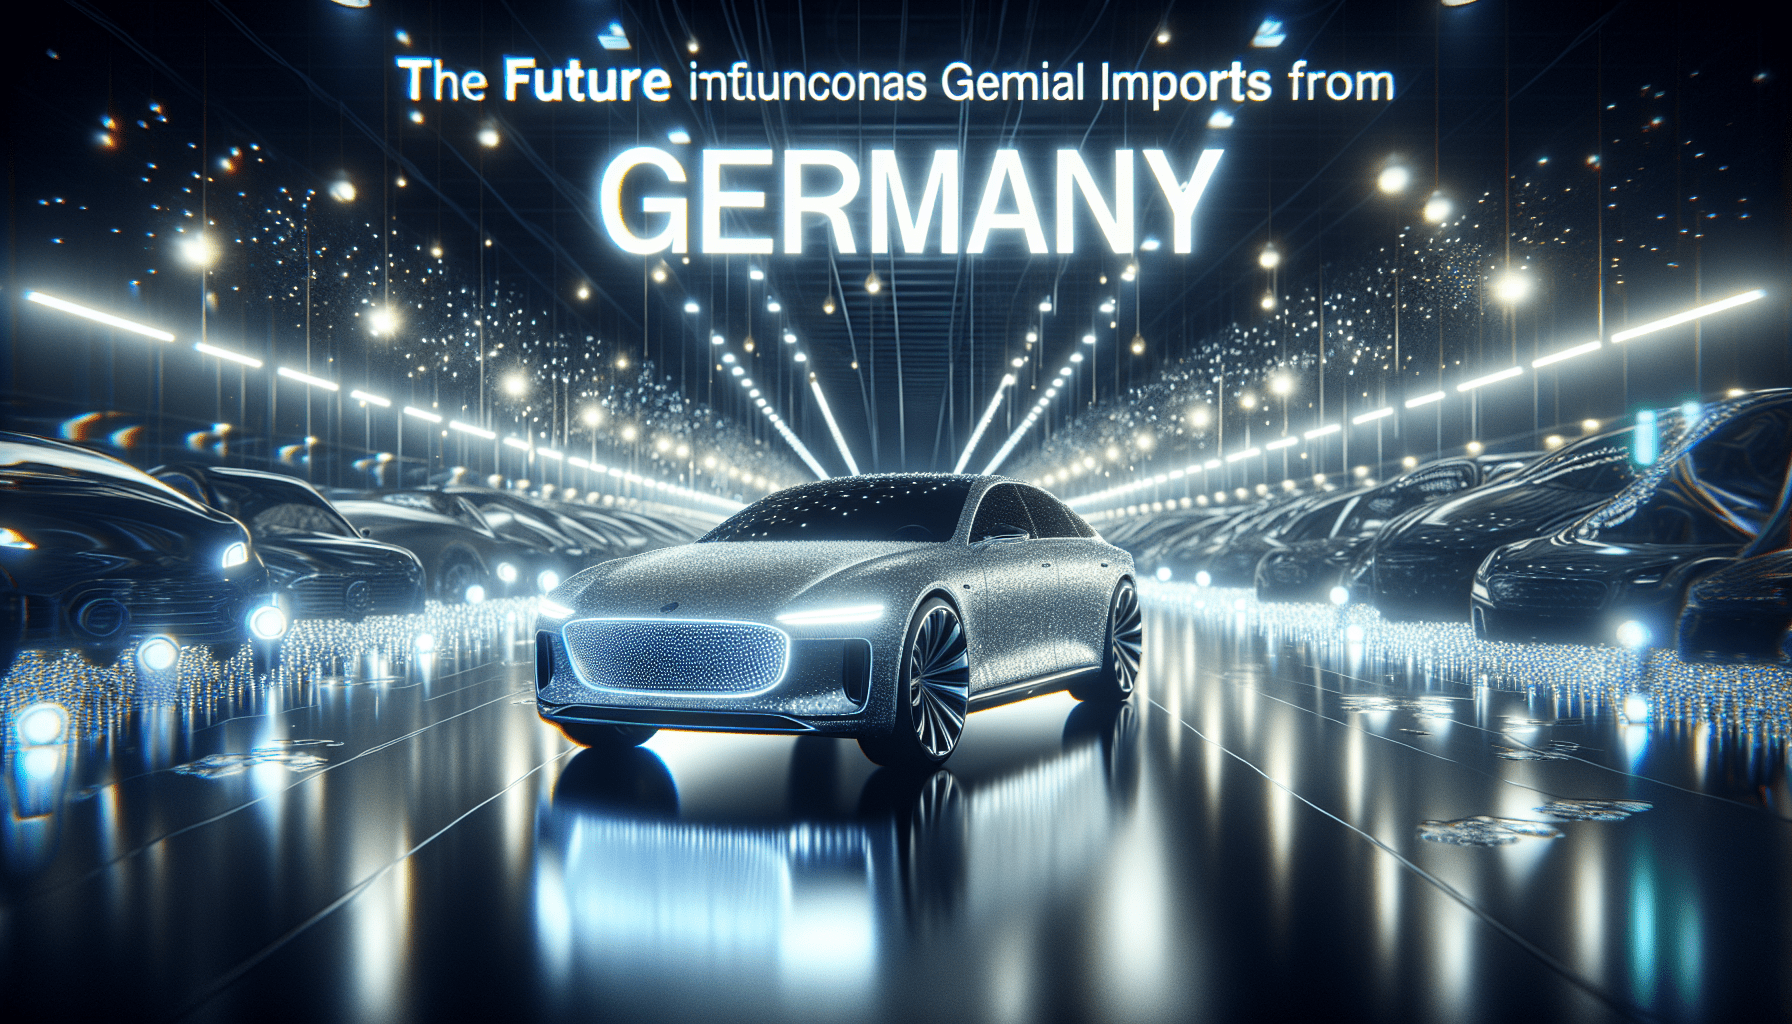 εισαγωγη αυτοκινητου απο γερμανια 2025